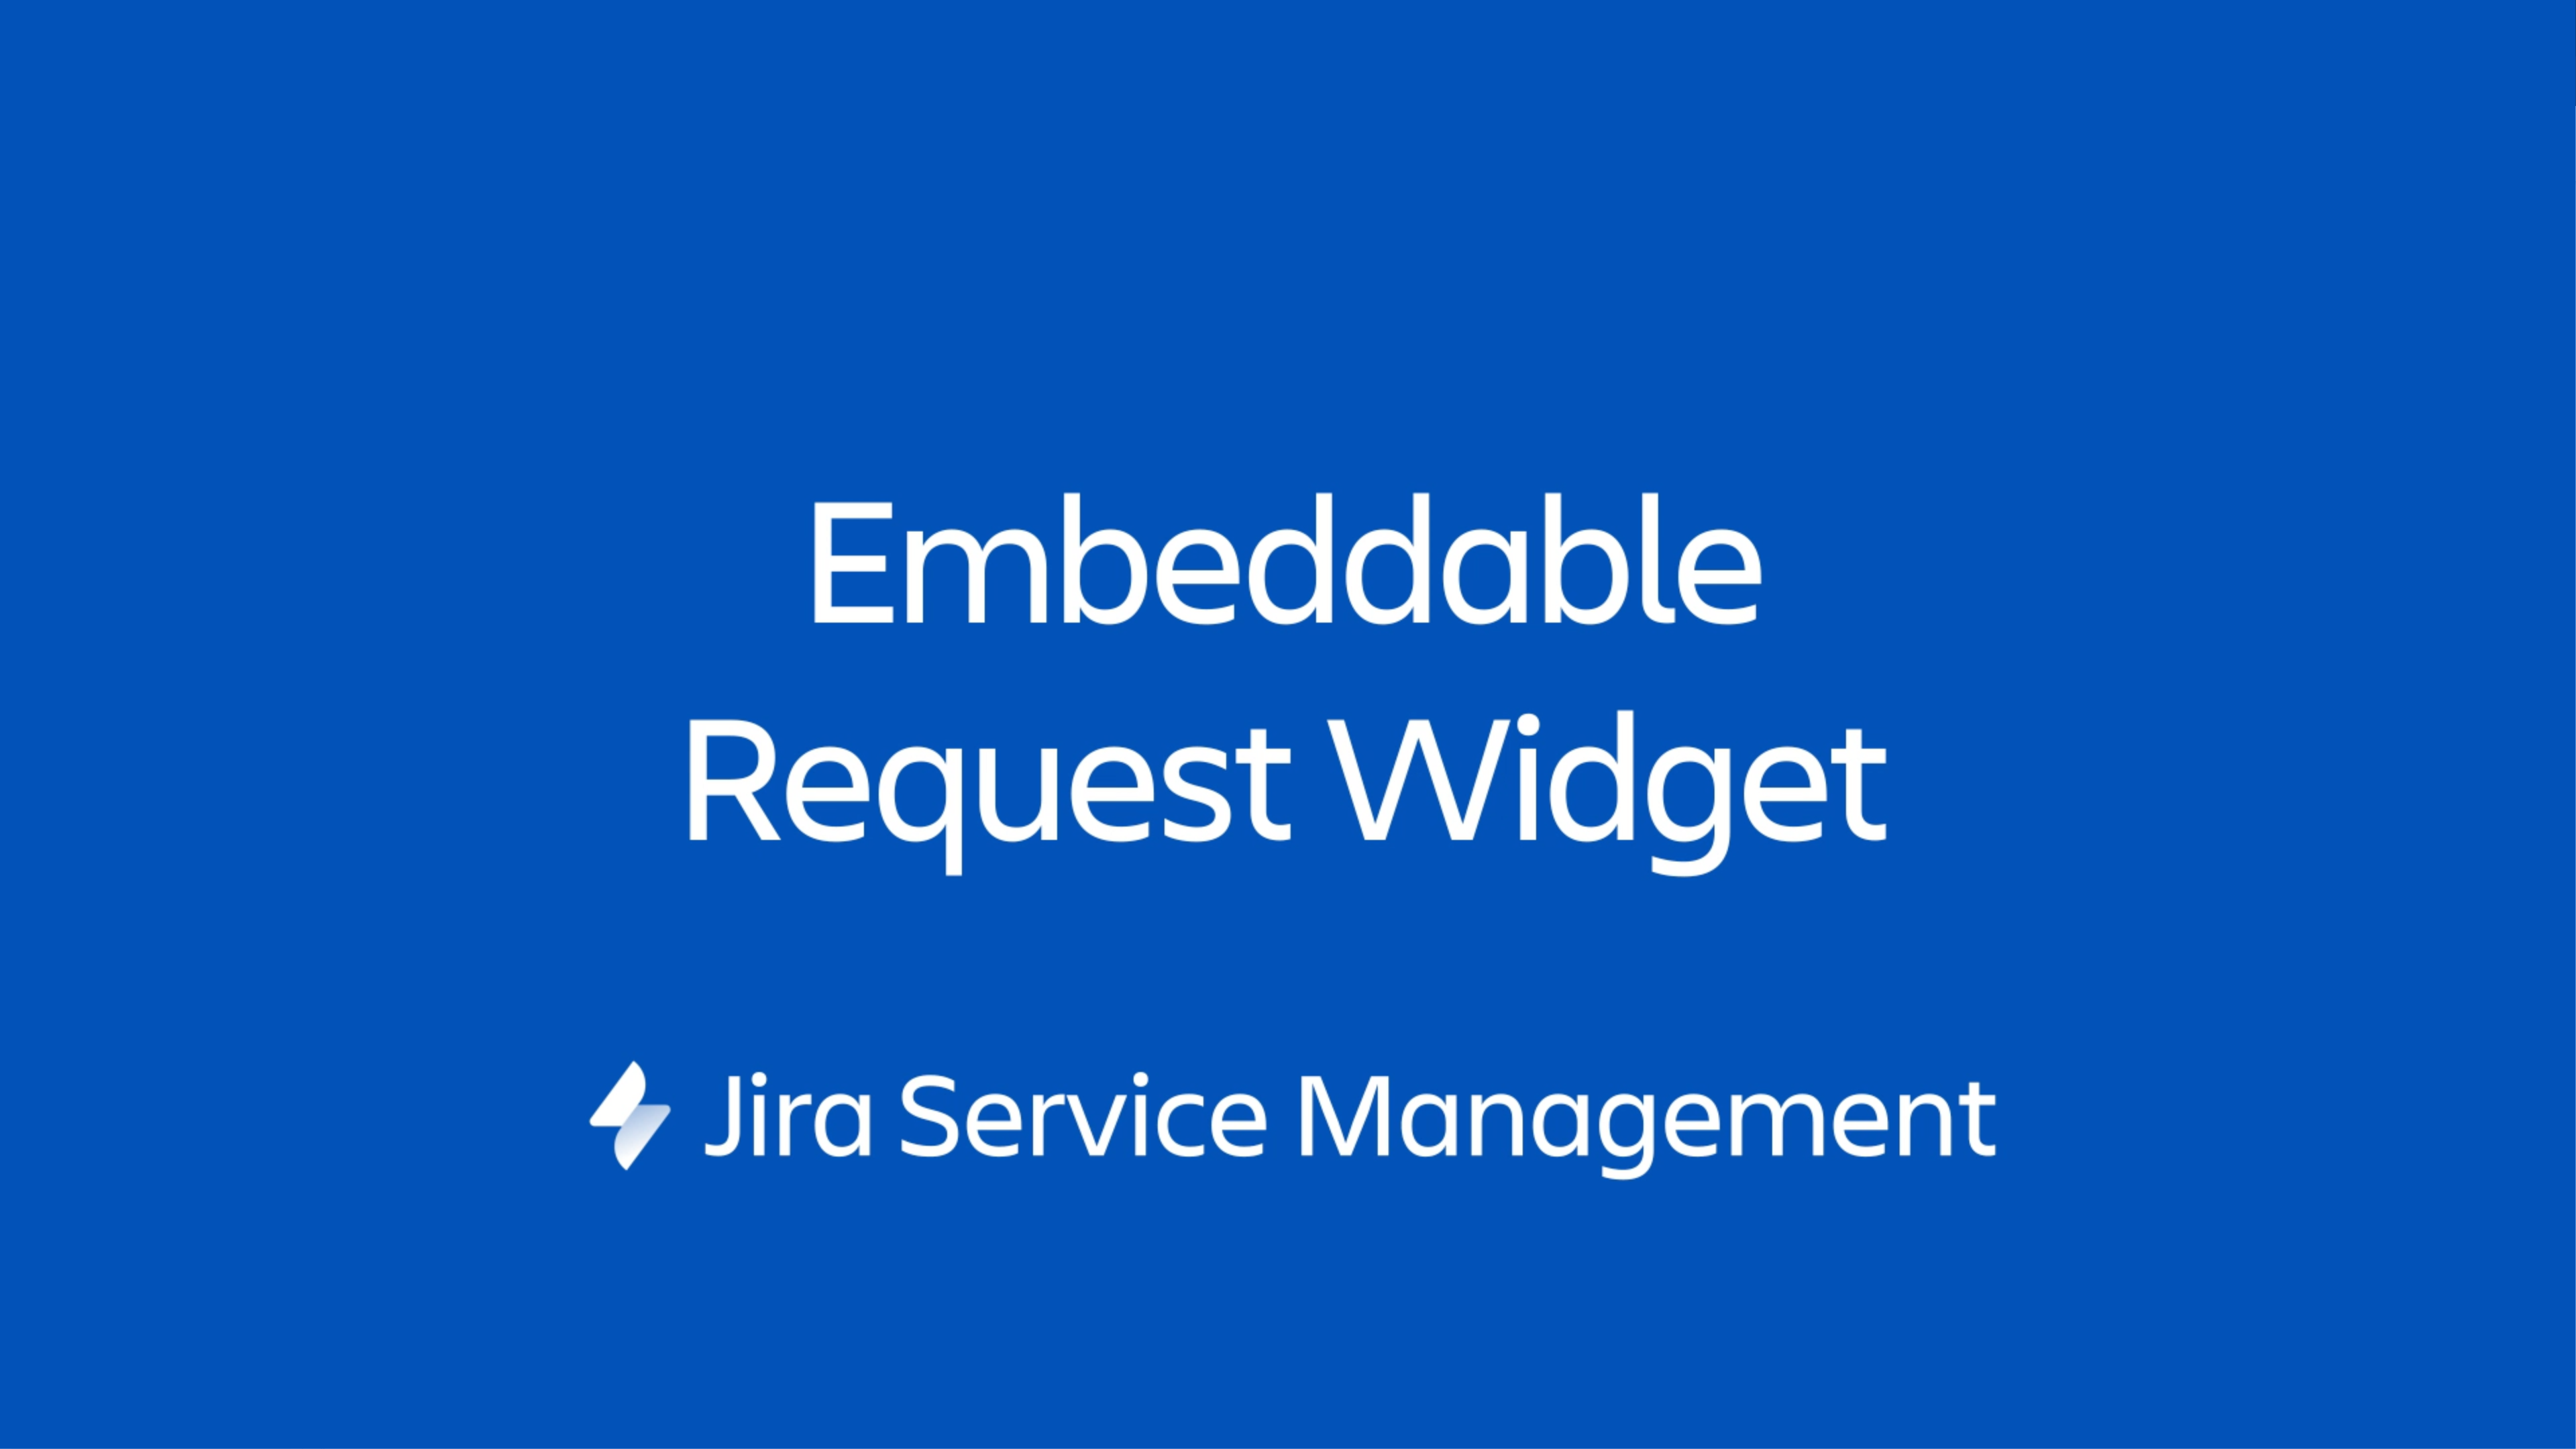 Виджет Jira Service Management представляет собой небольшой портал, который можно встроить на веб-странице под вашим управлением.